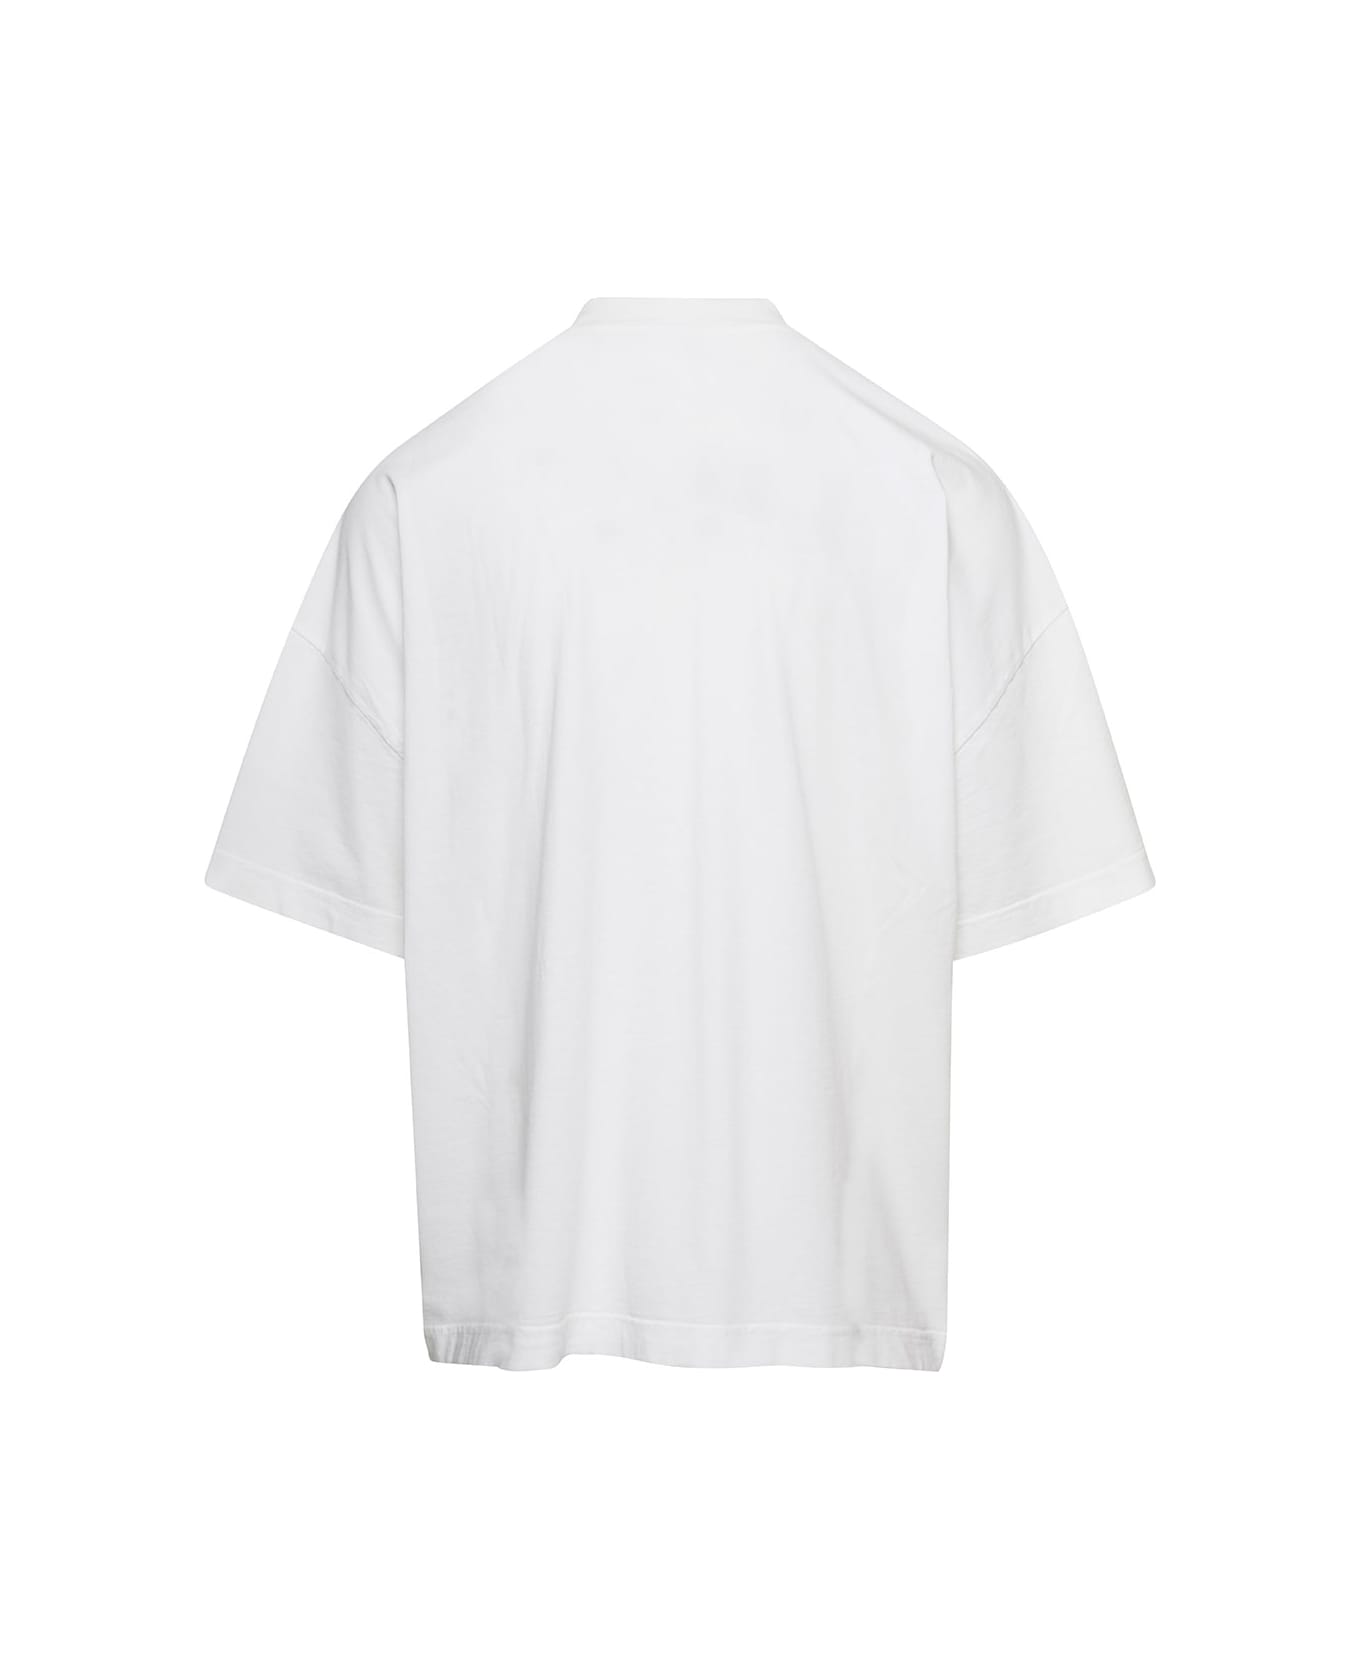 Bonsai Oversized White T-shirt With Logo Print In Cotton Man - White